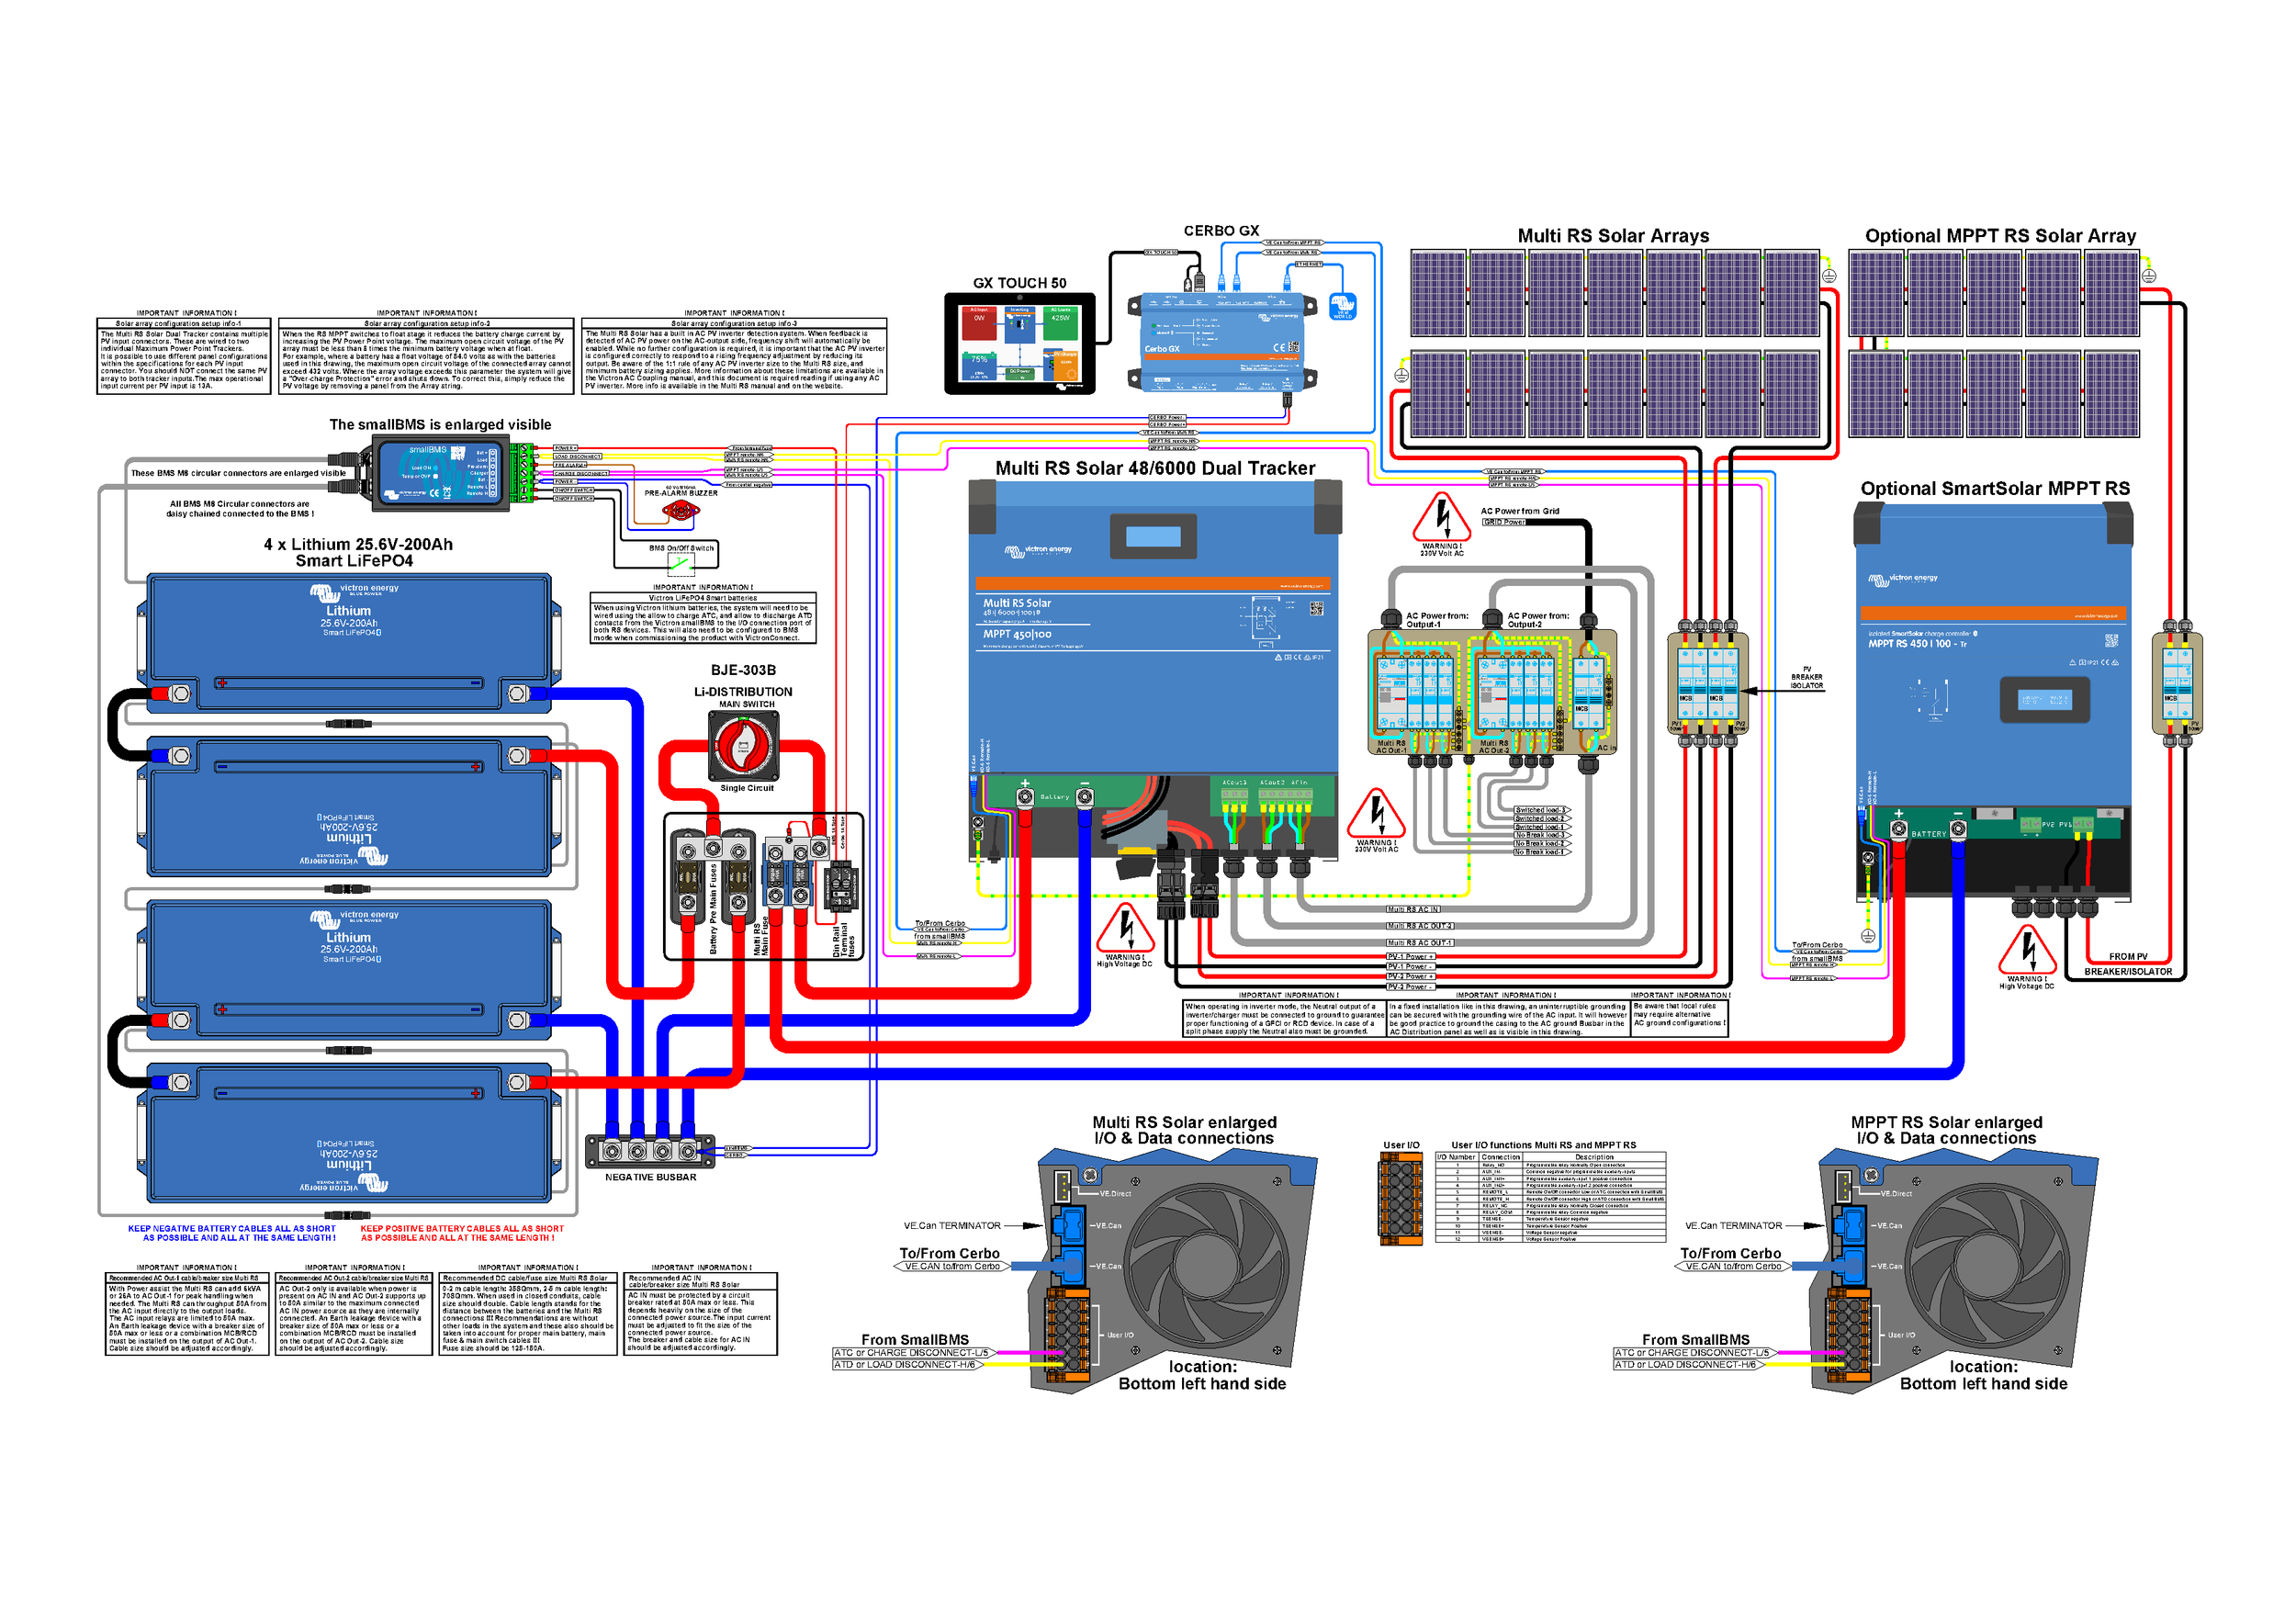 Diagramma completo di cablaggio del Multi RS Solar